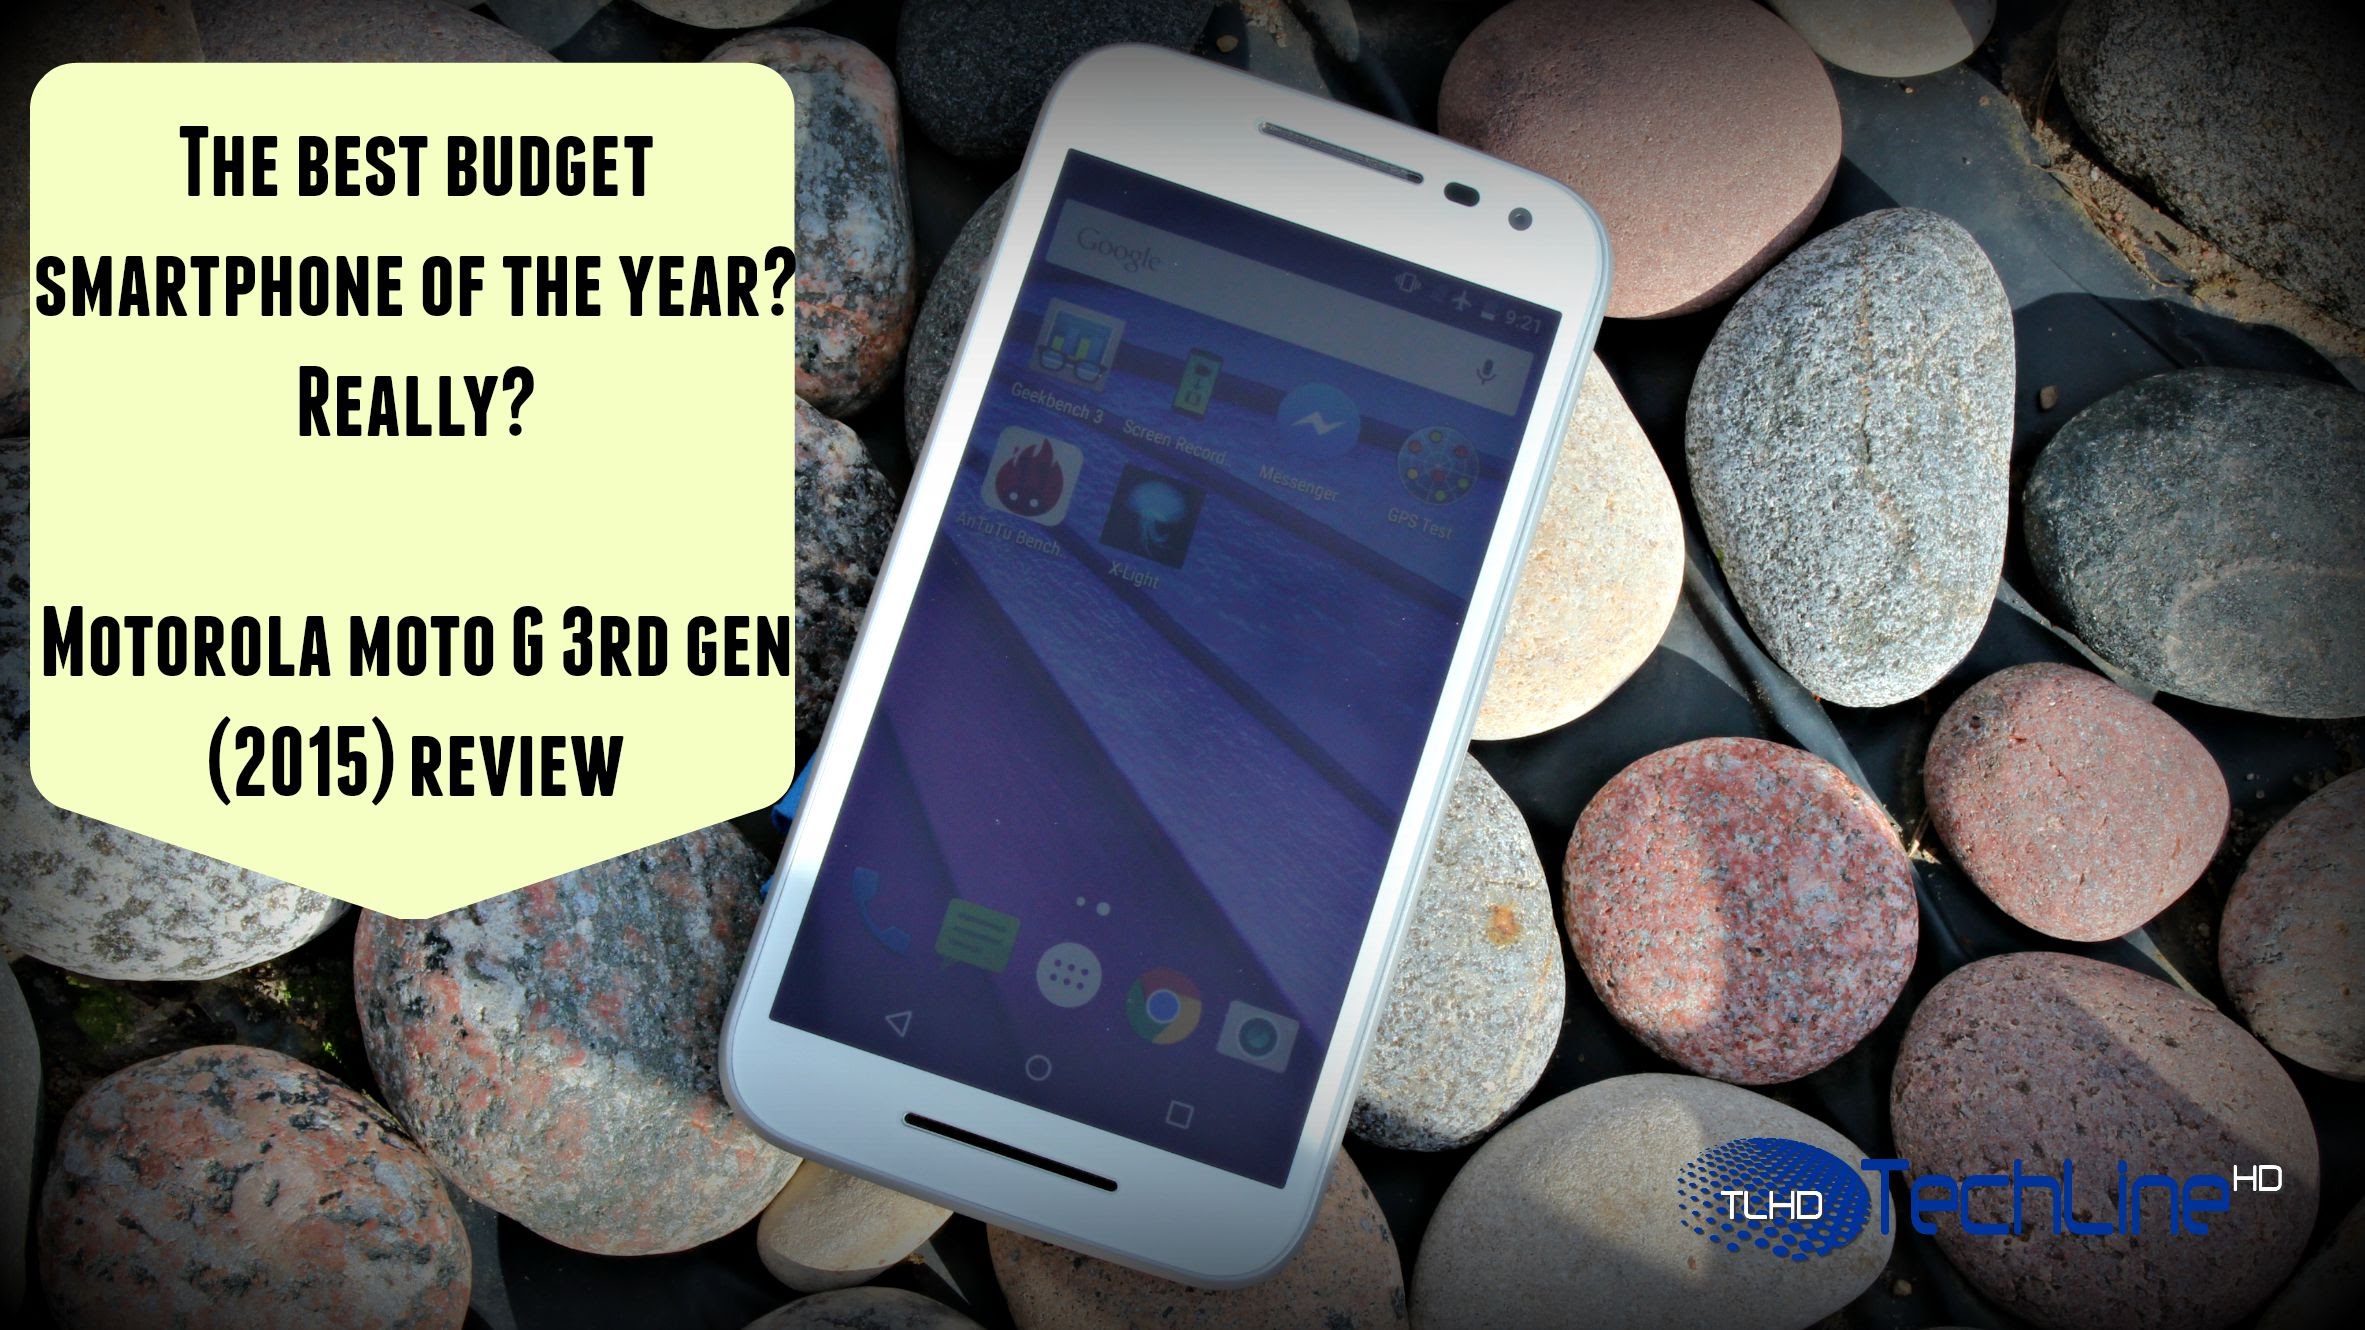 ik heb dorst Darts garen Motorola Moto G 3rd Gen 2015 Review - The Best Budget Smartphone of 2015?  REALLY?